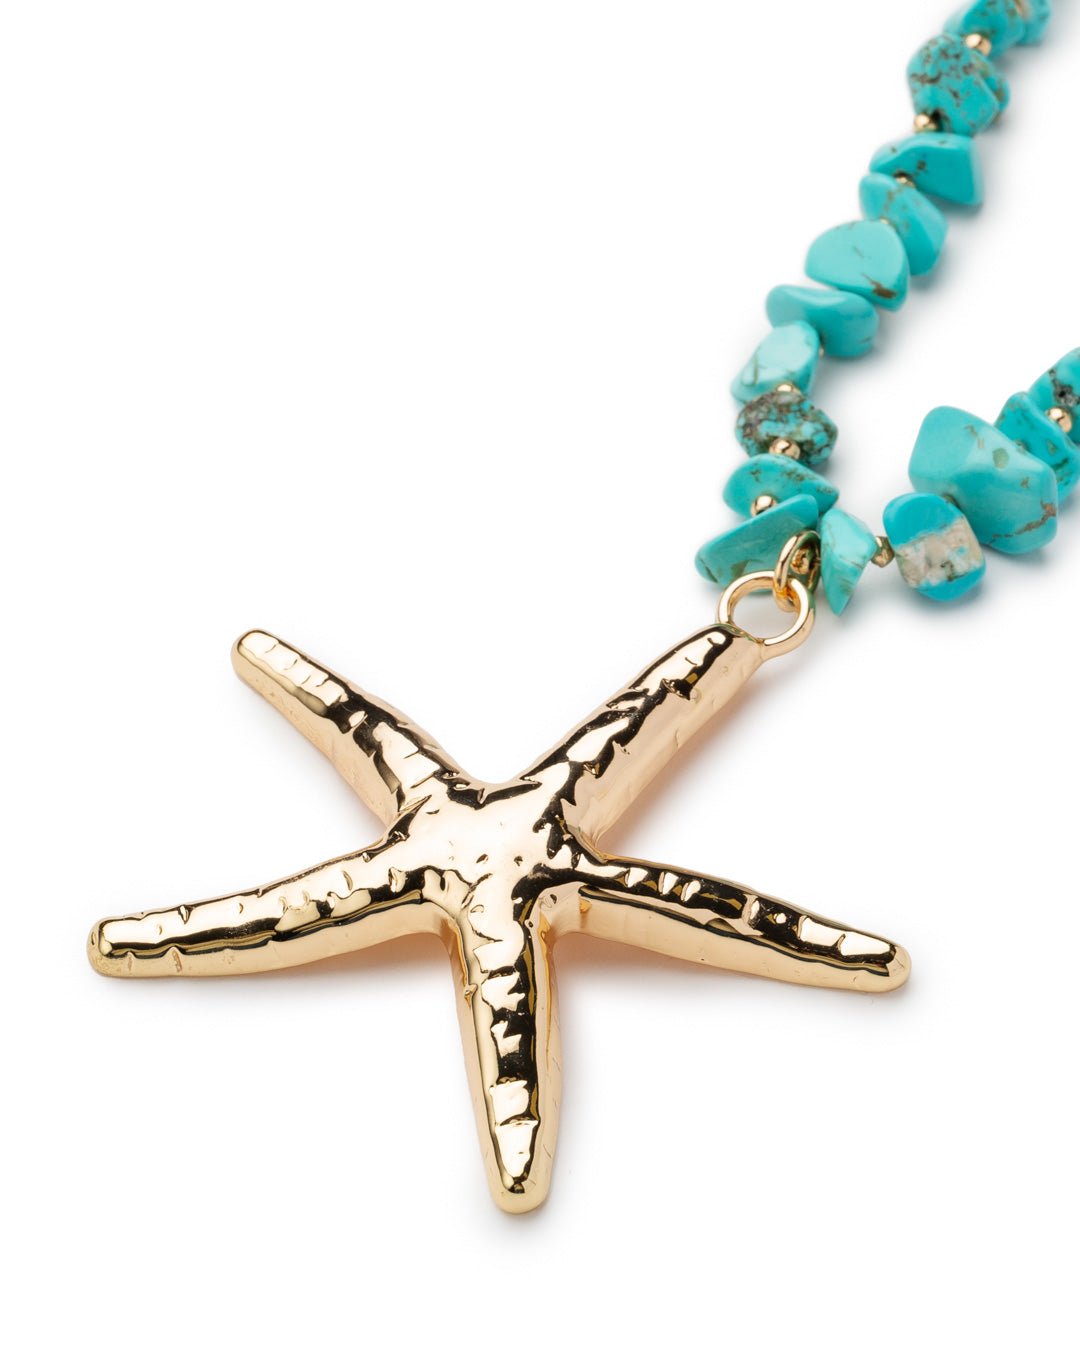 Collana lunga con pietre turchesi e perlate, pendente a stella marina in metallo - Mya Accessories